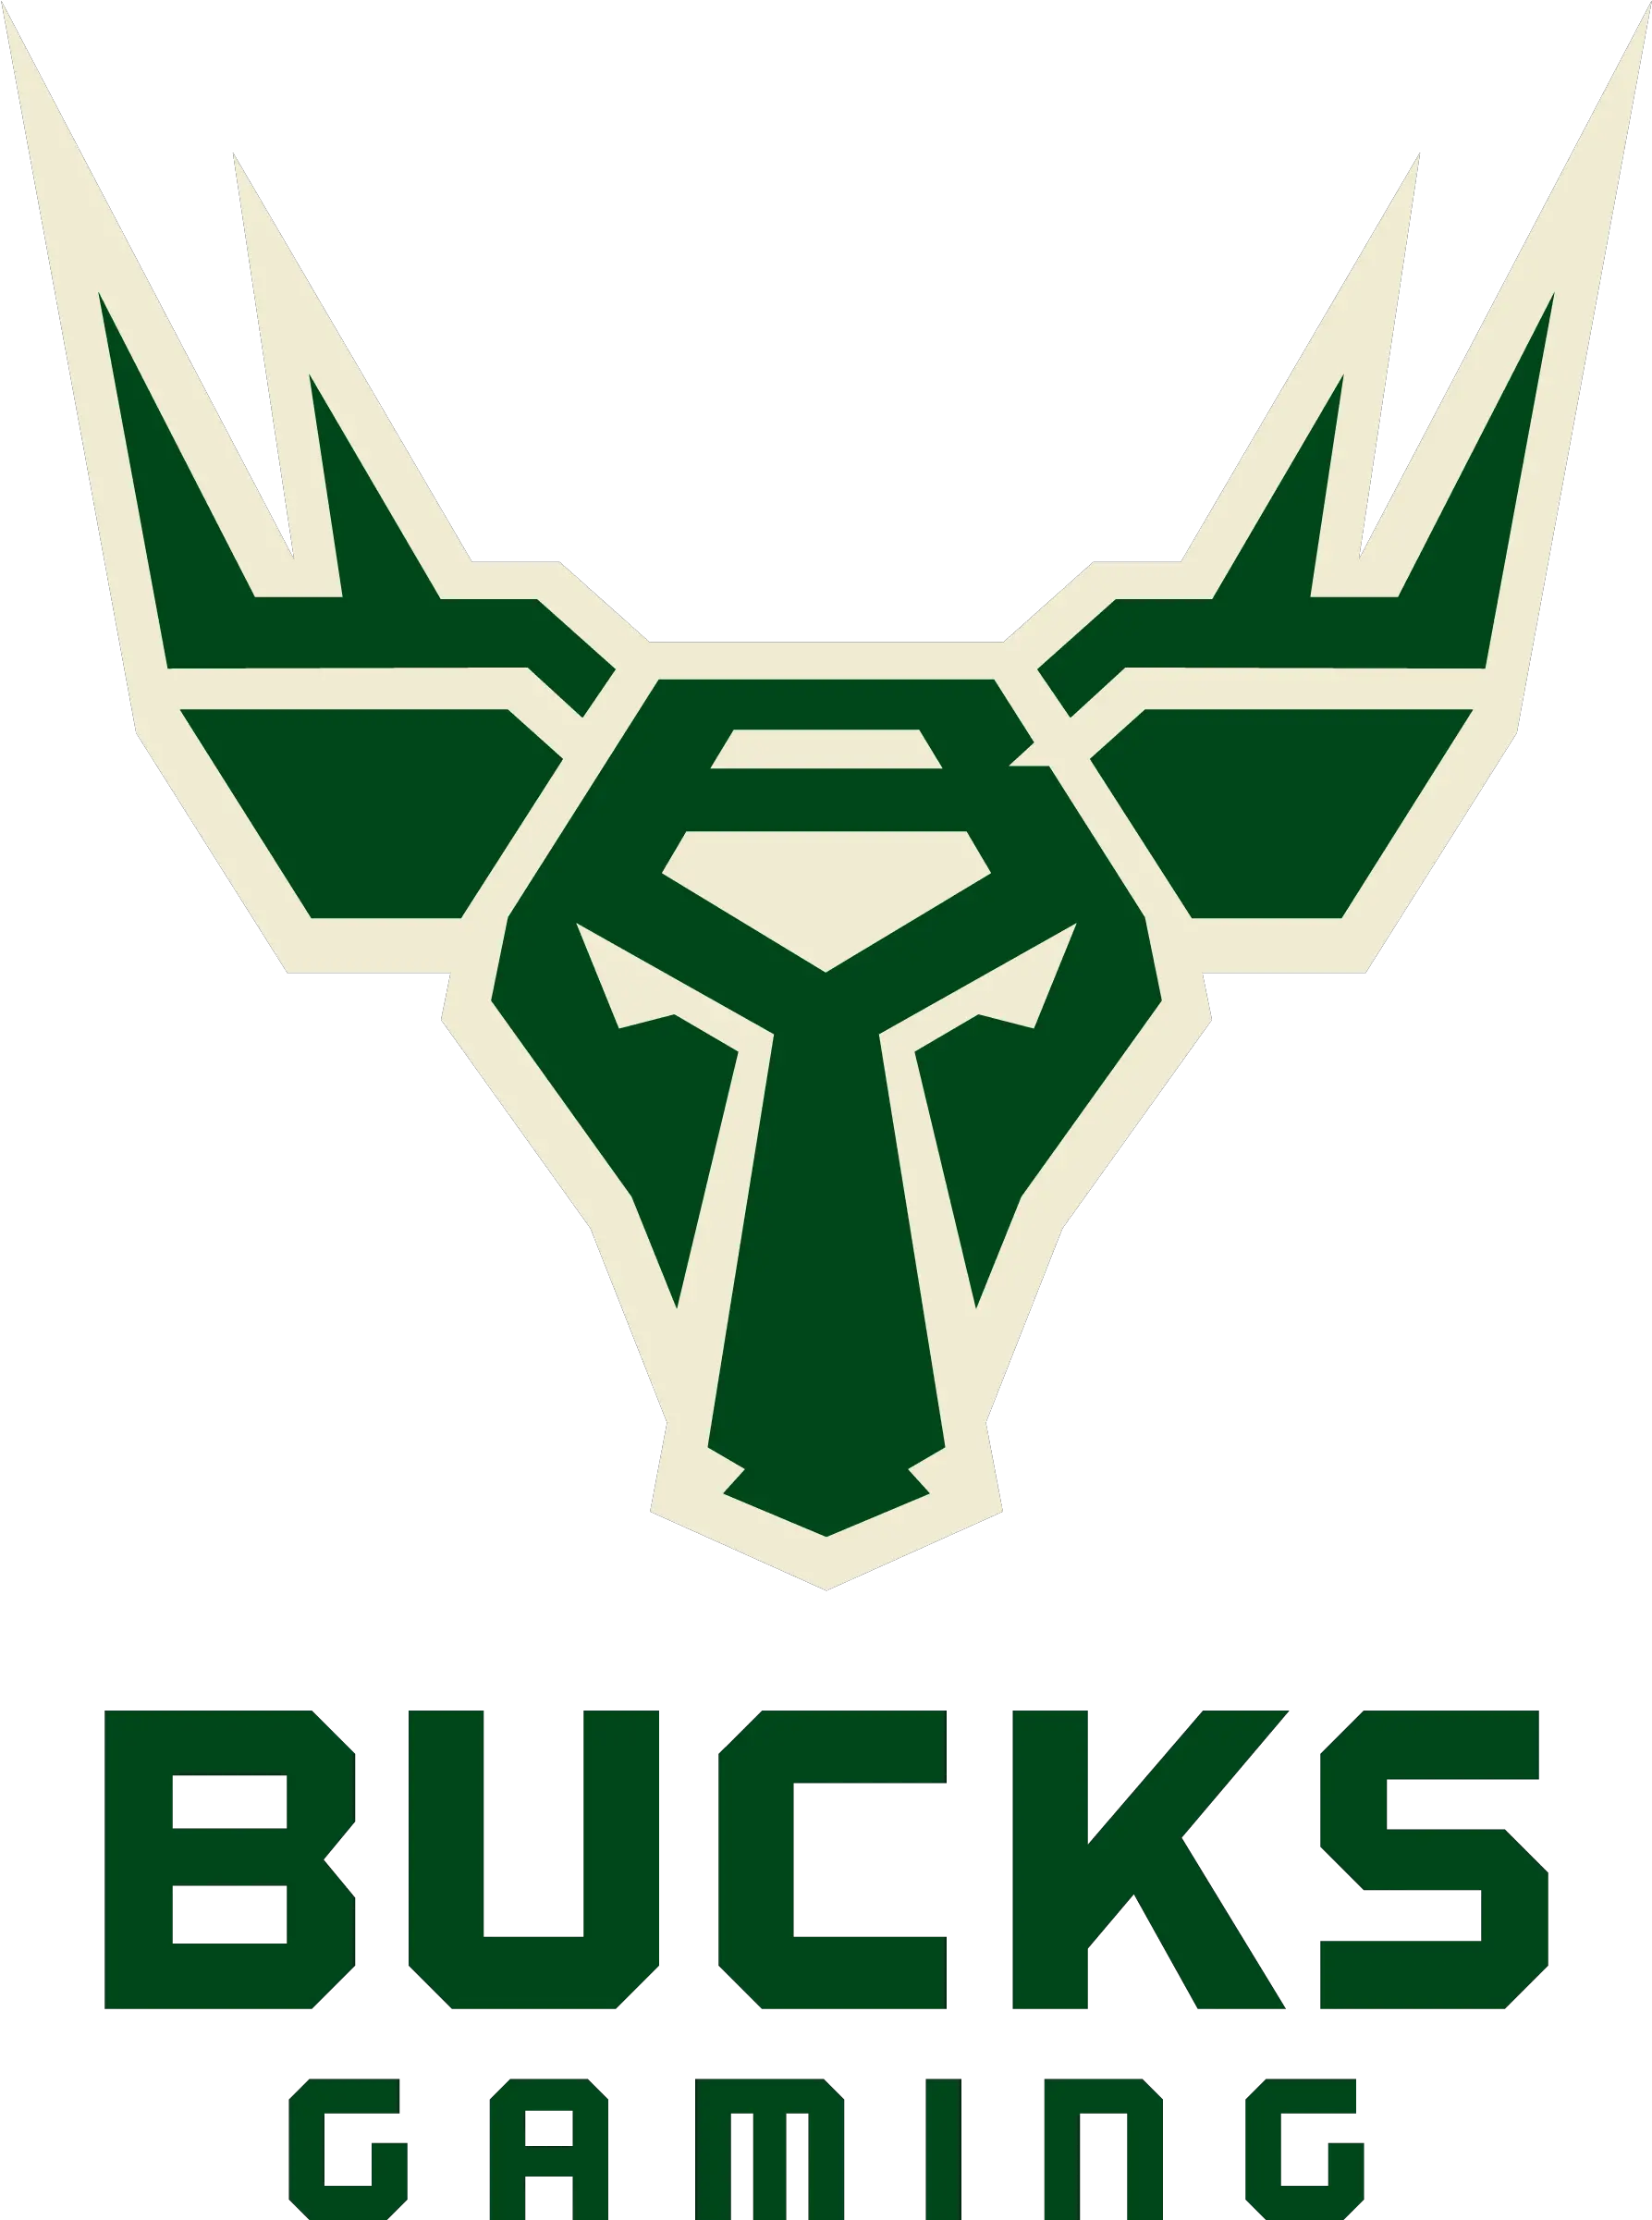 Download Bucks Gaming Logo Png Image Bucks Gaming Logo Bucks Logo Png